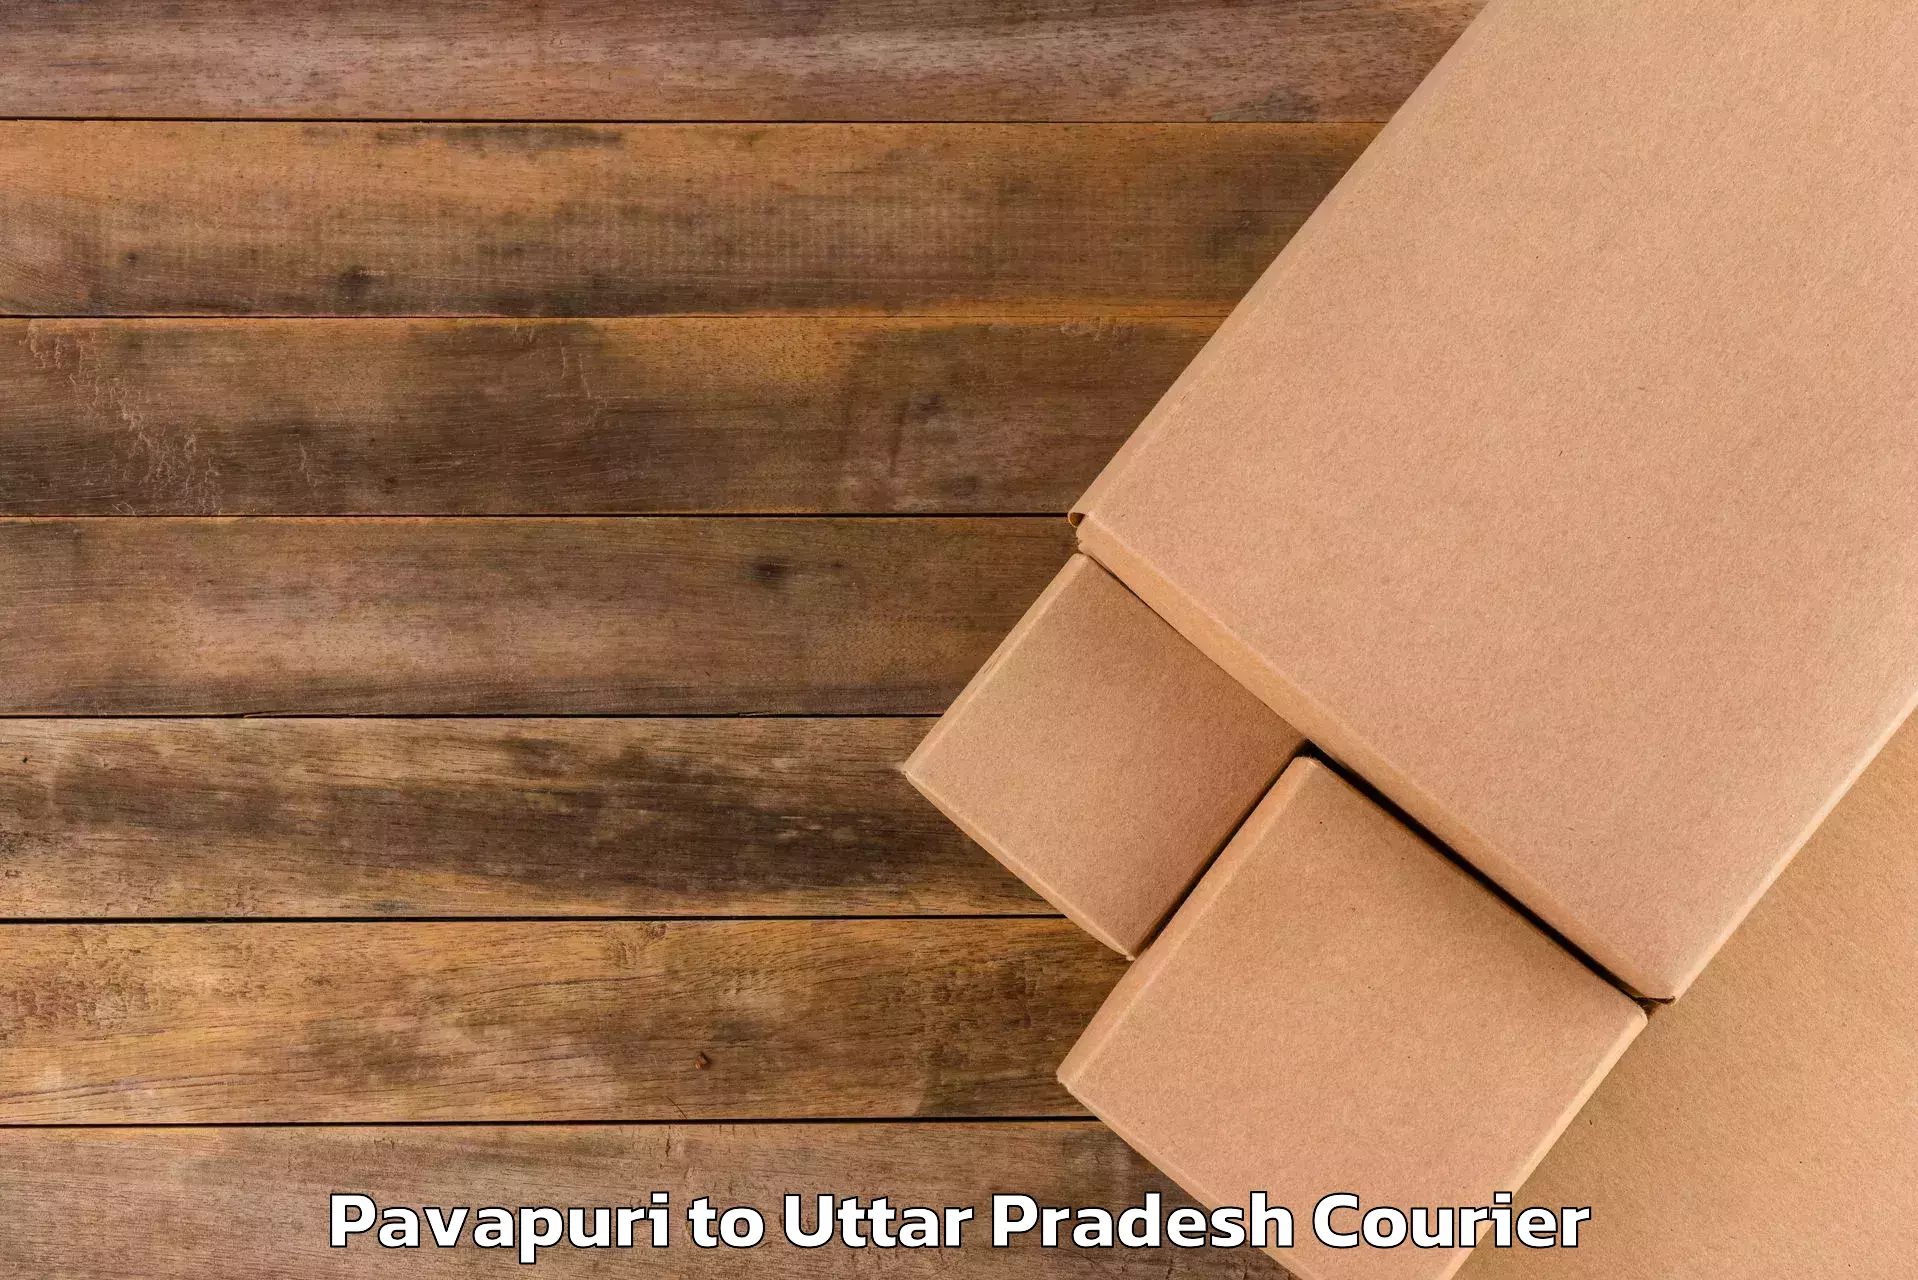 Artwork baggage courier Pavapuri to Rudauli